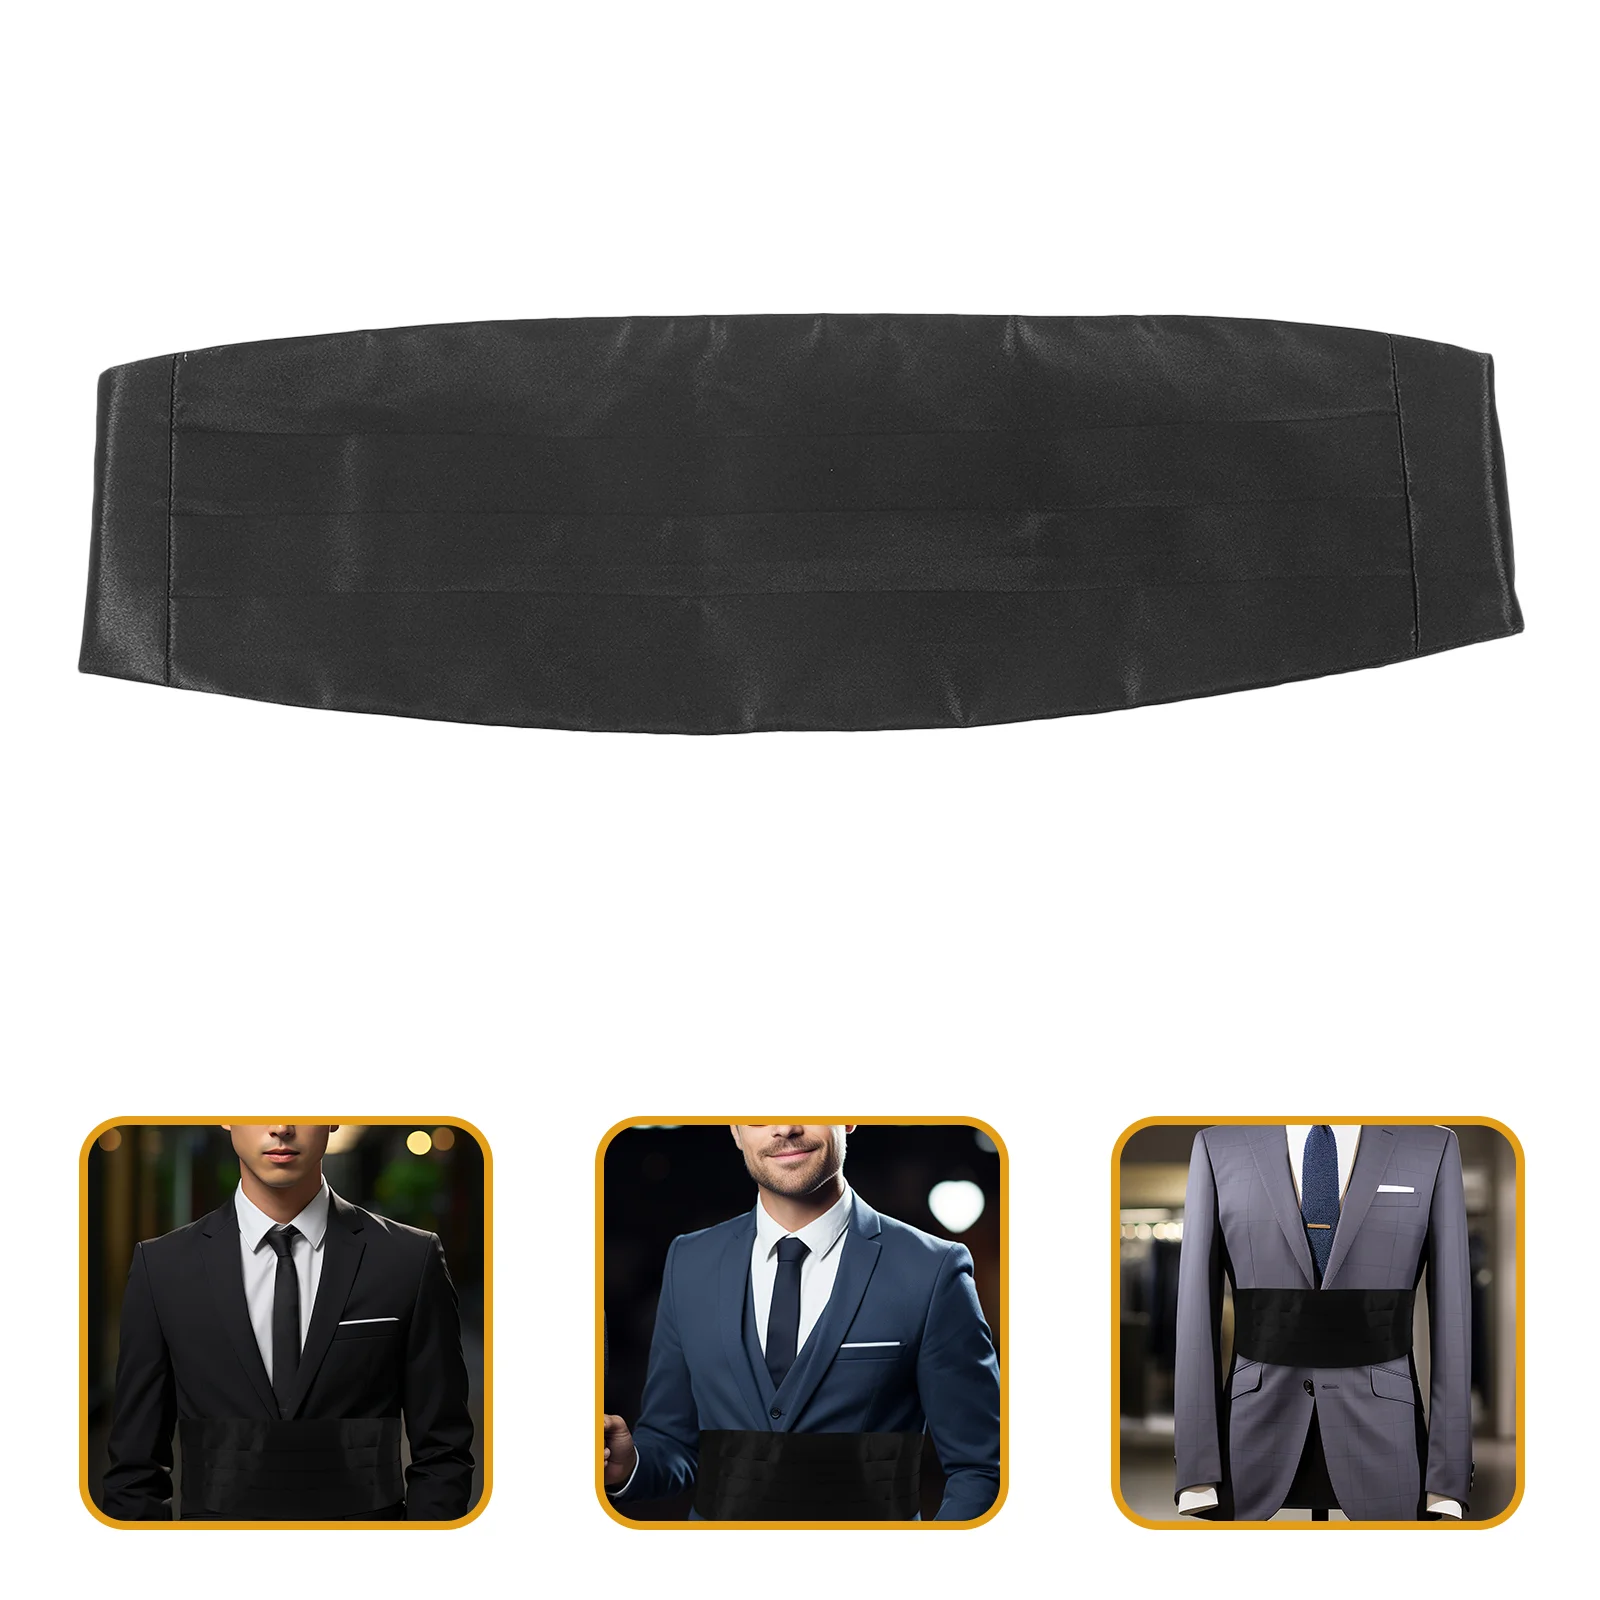 

Black Corset Men Costume Accessories Evening Officer Cummerbund Suit Fabric Tuxedo Bridegroom Man